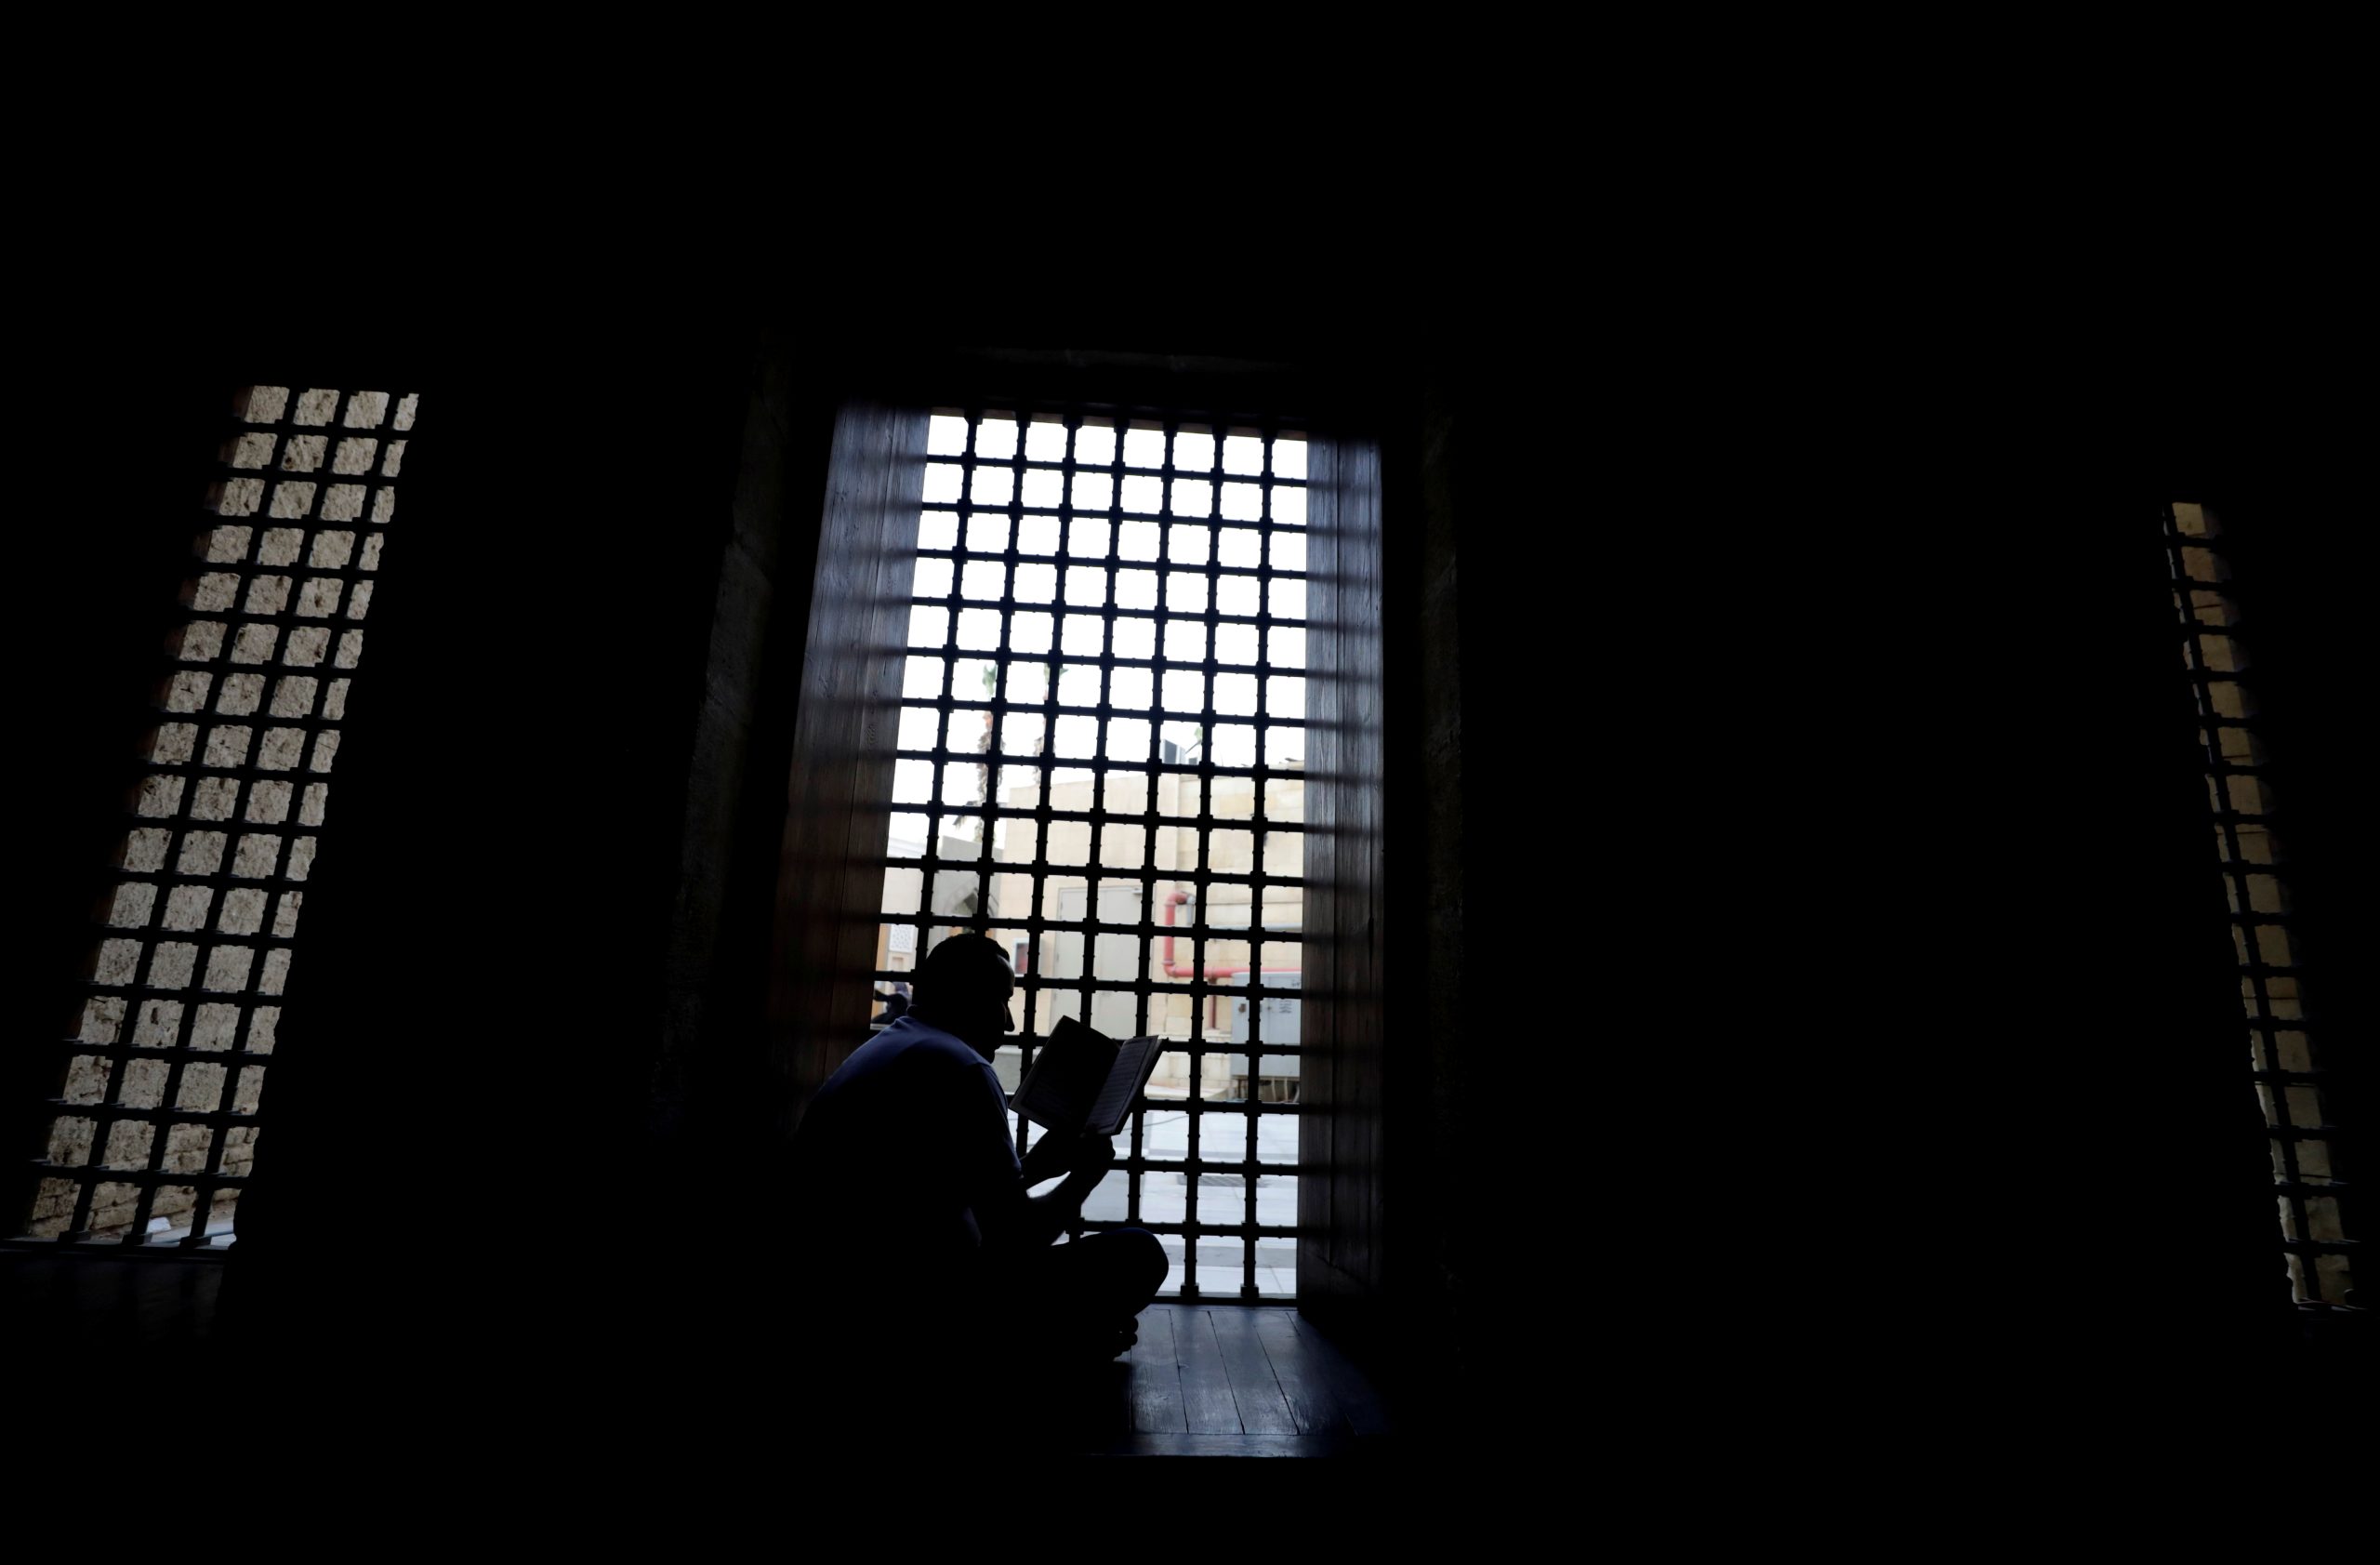 رجل يقرأ القرآن بالجامع الأزهر، القاهرة، مصر، 8 أبريل 2022. رويترز/محمد عبد الغني.